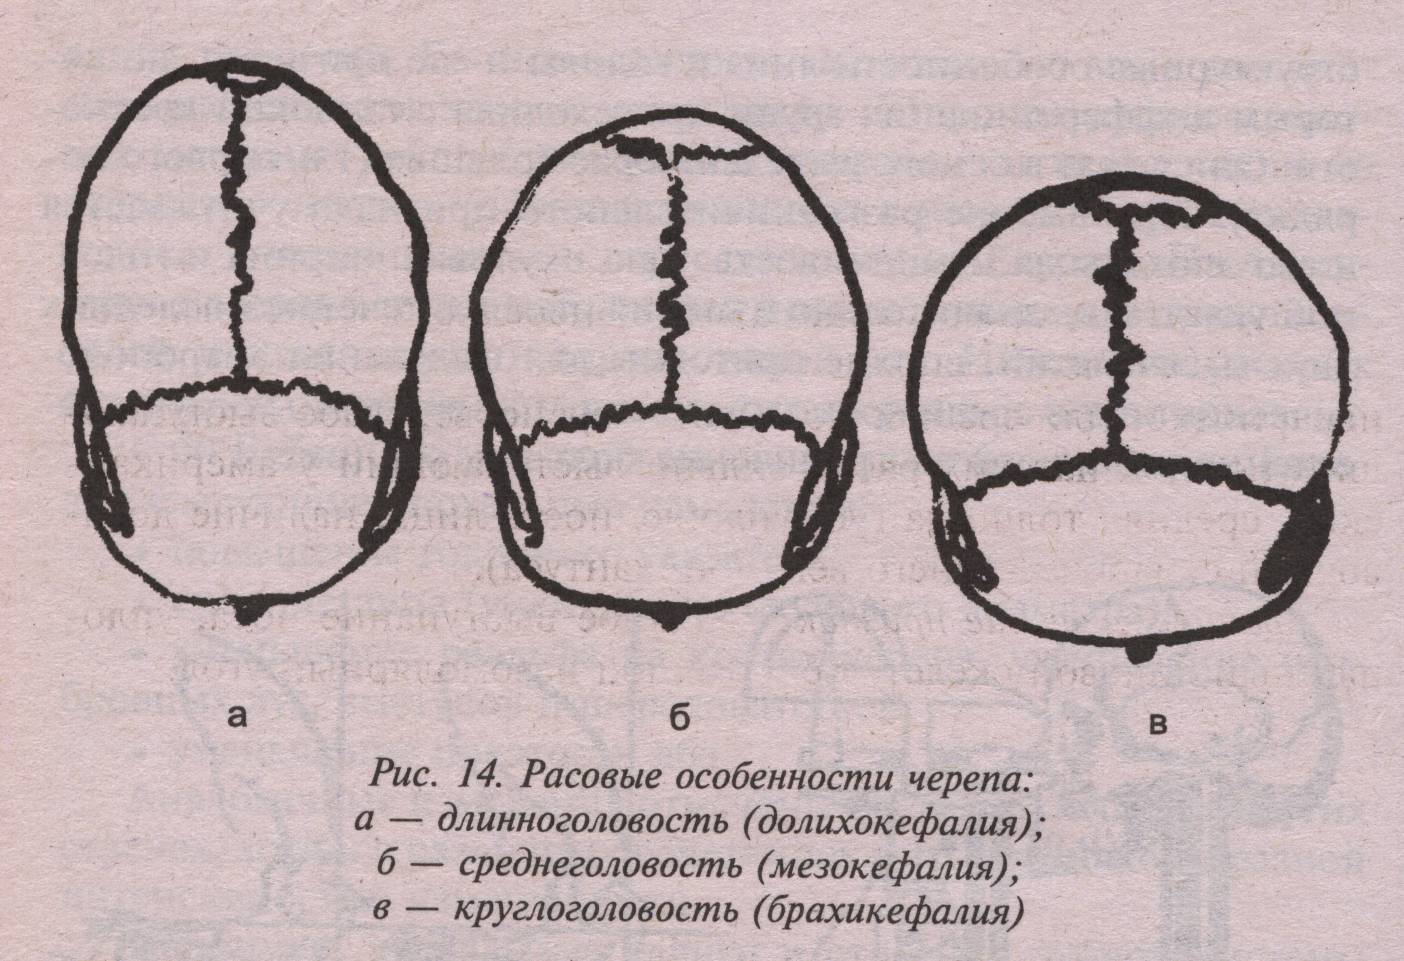 Варианты формы черепа. Брахикефалия это в антропологии. Деформация черепа долихоцефалия. Брахикефалия мезокефалия долихокефалия.